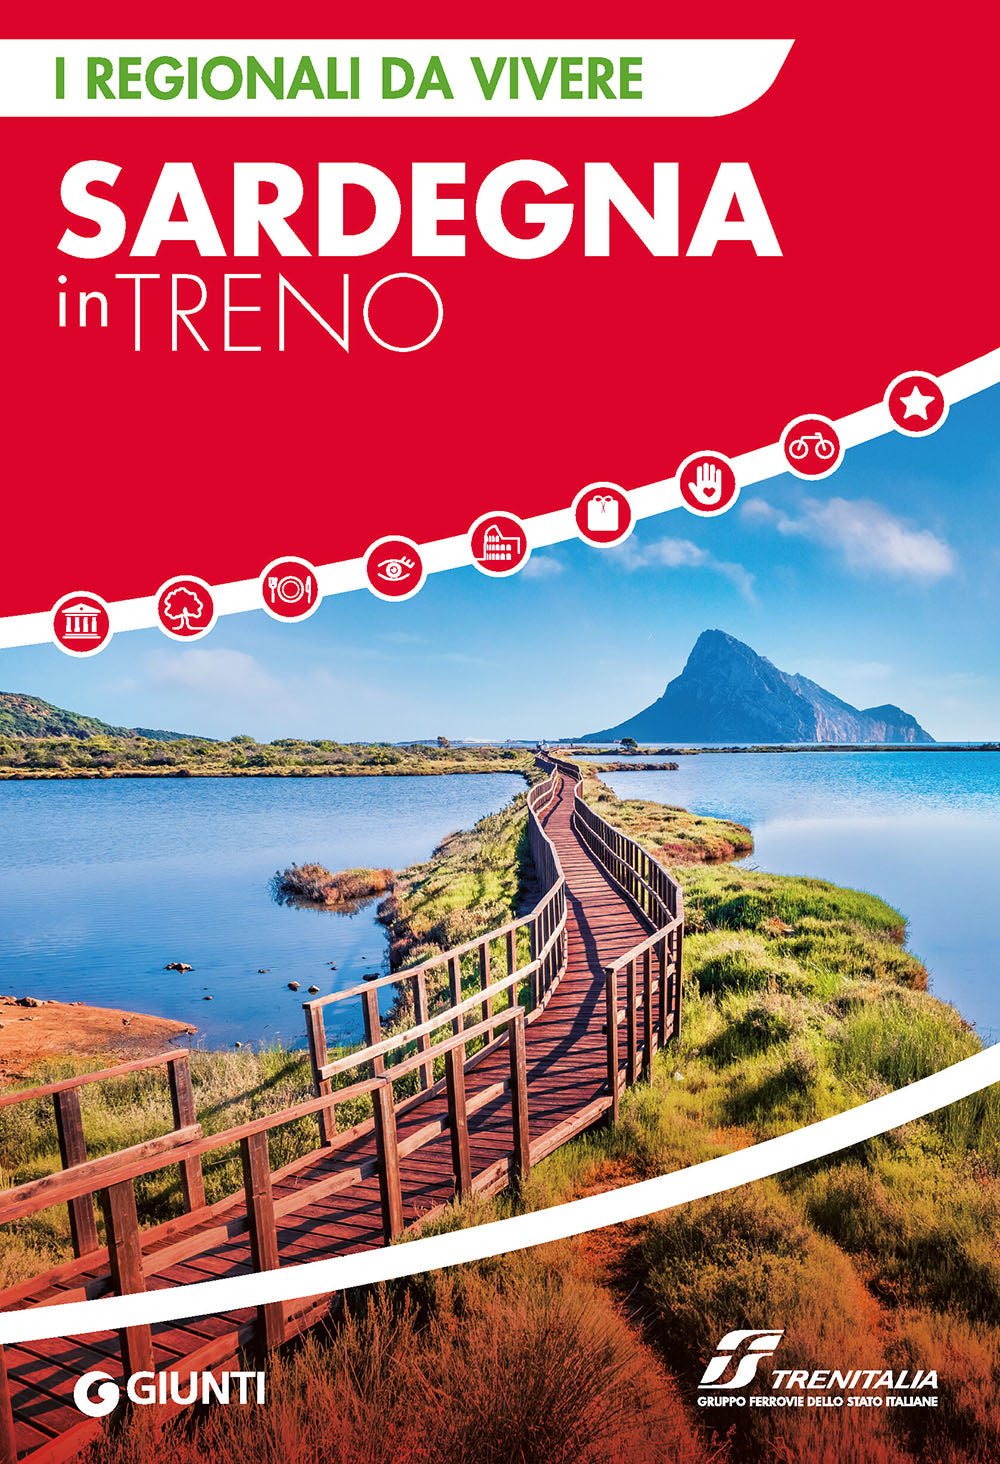 Sardegna in treno::I regionali da vivere